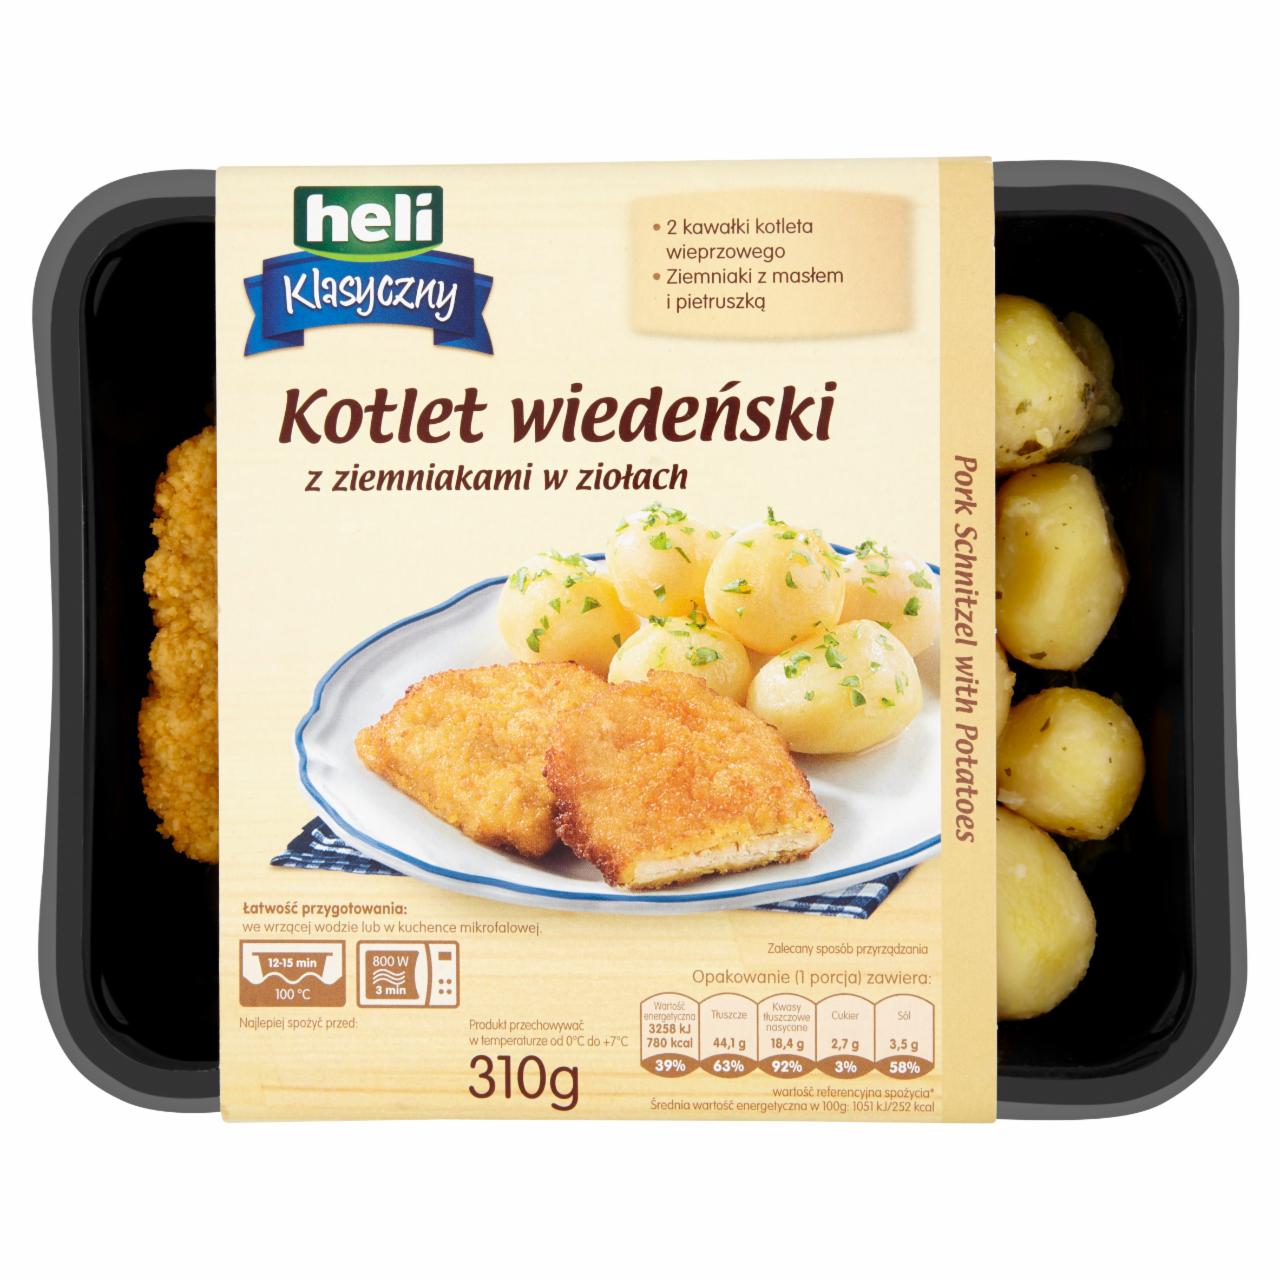 Zdjęcia - Heli Klasyczny Kotlet wiedeński z ziemniakami w ziołach 310 g